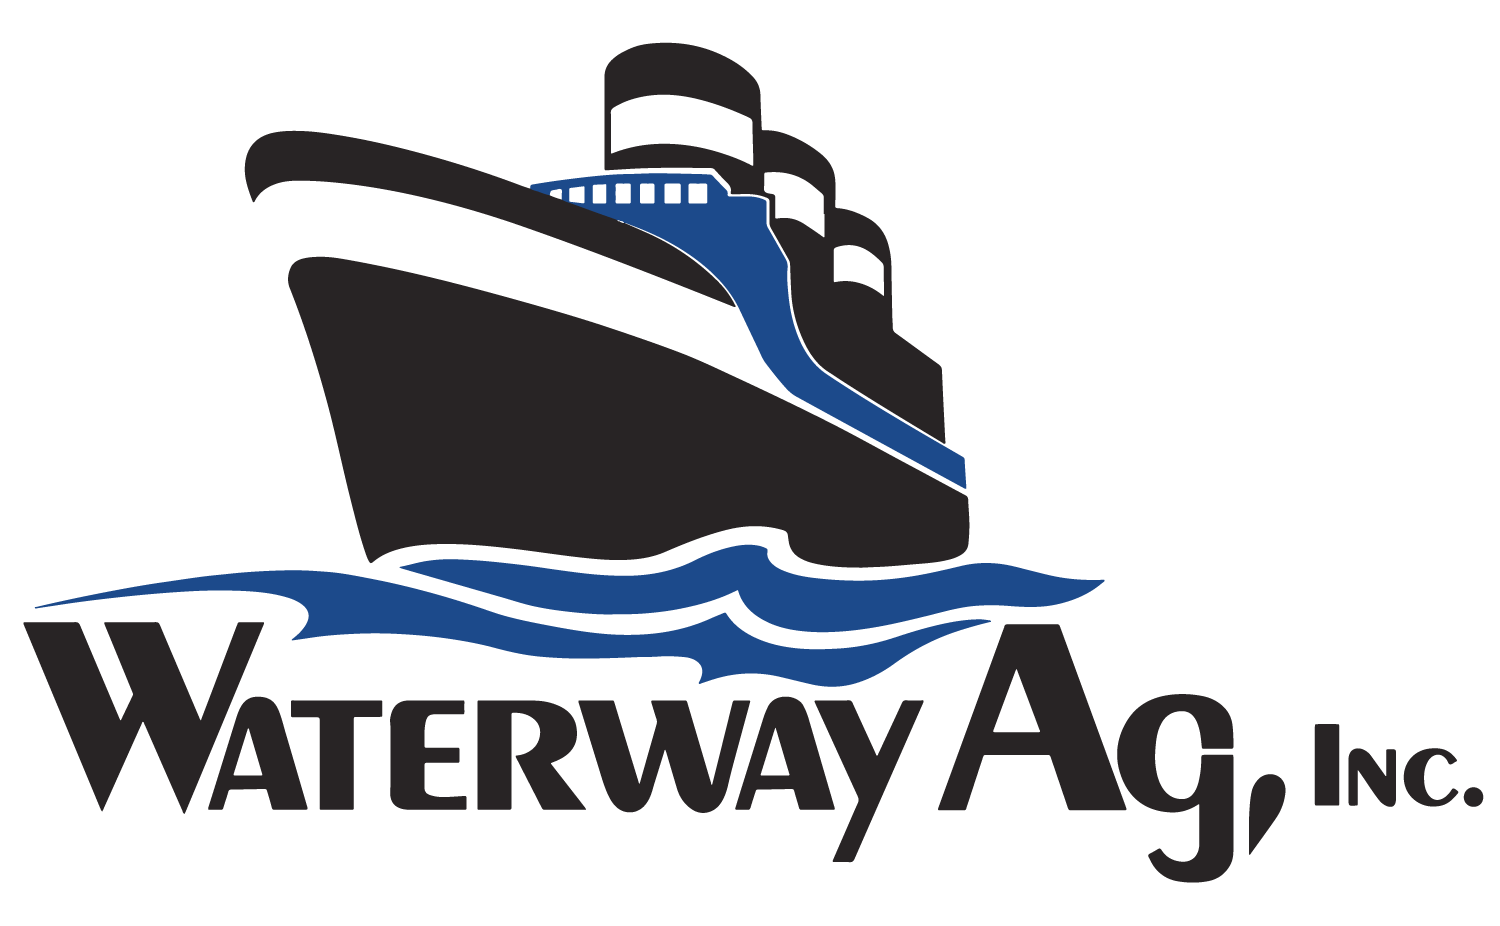 Waterway Ag